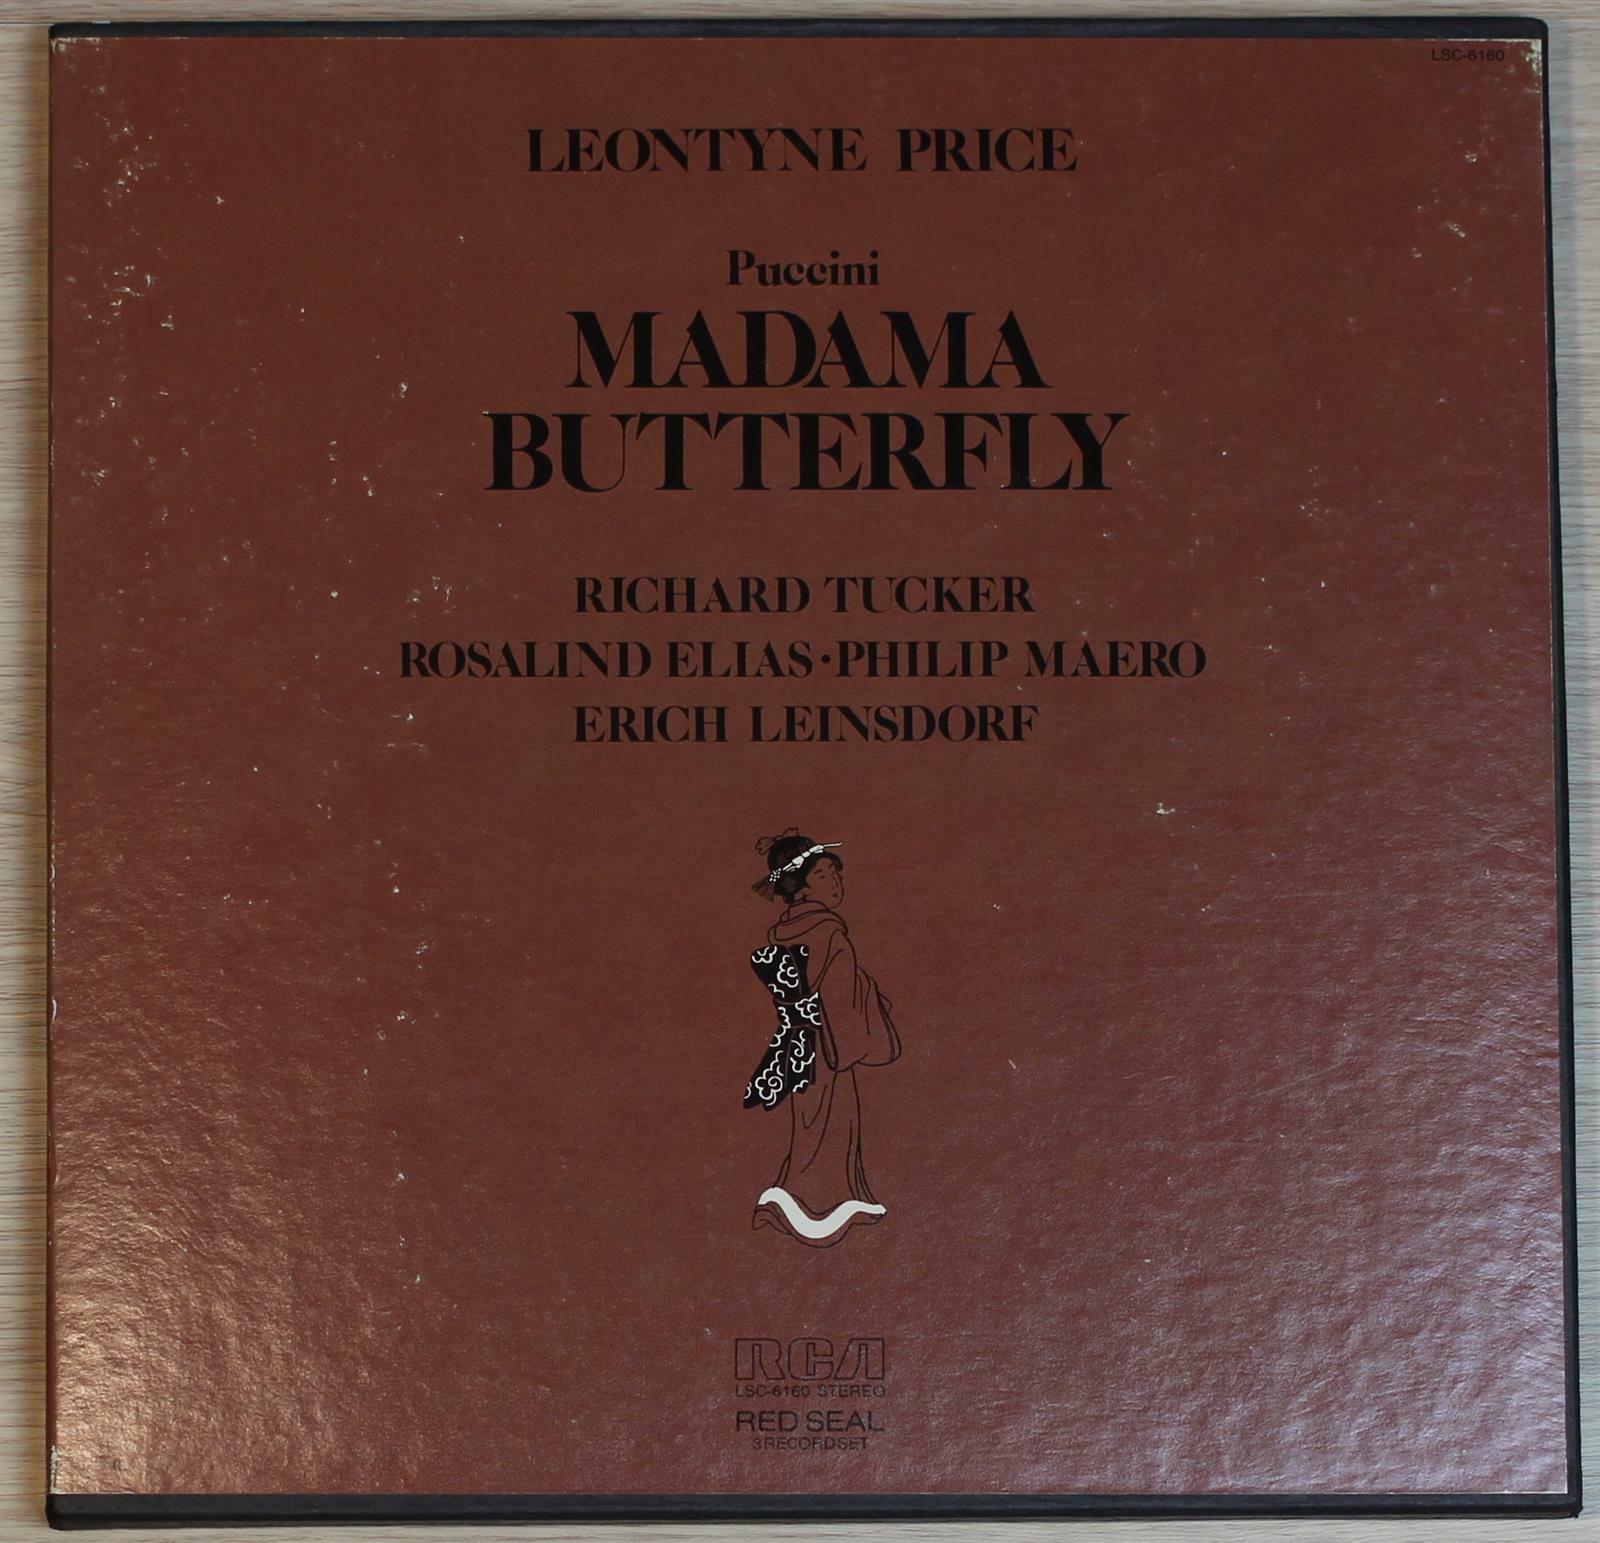 [중고] [3LP Box 수입] Puccini - Madama Butterfly · Leontyne Price, Richard Tucker, Erich Leinsdorf [US]